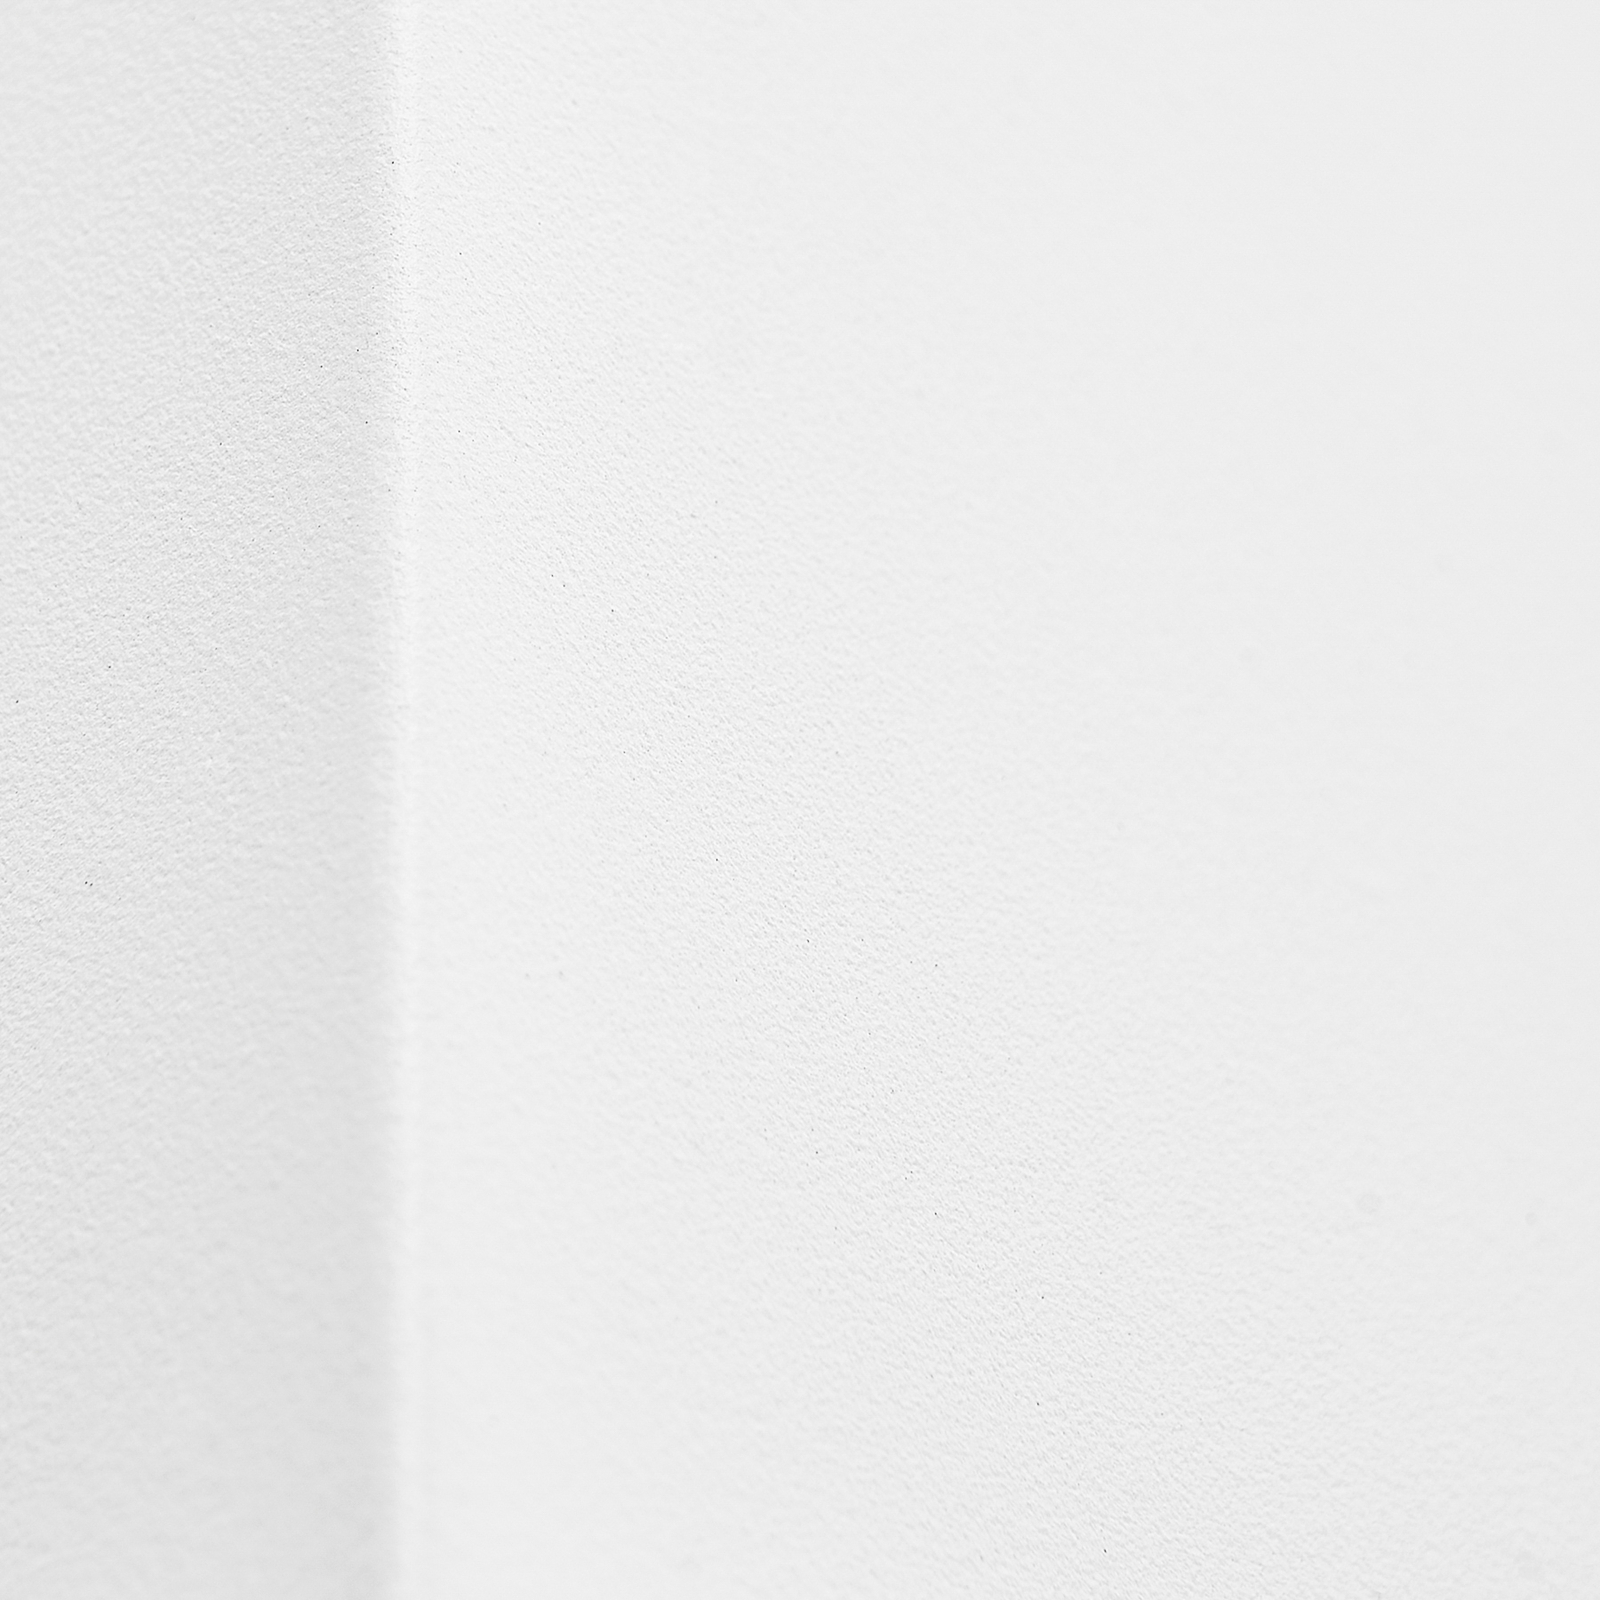 Prios applique d'extérieur Tetje, blanc, angulaire, 10 cm, set de 4 pièces